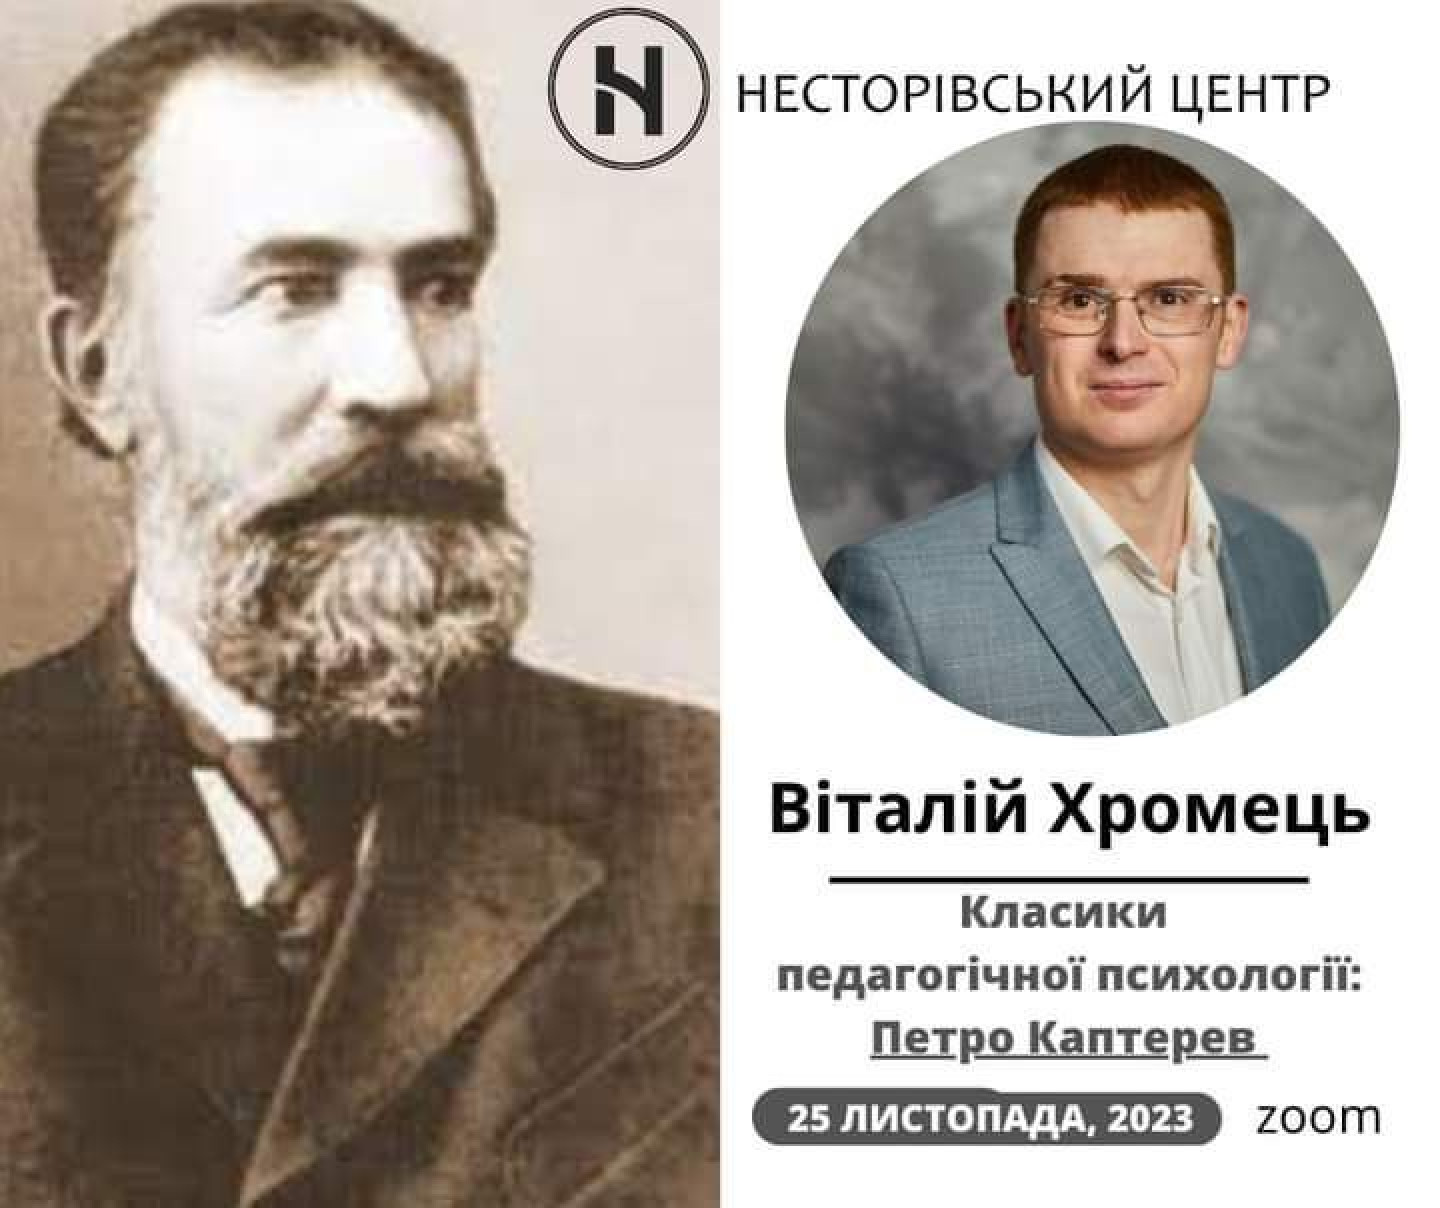 Педагогіка класиків Петро Каптерев